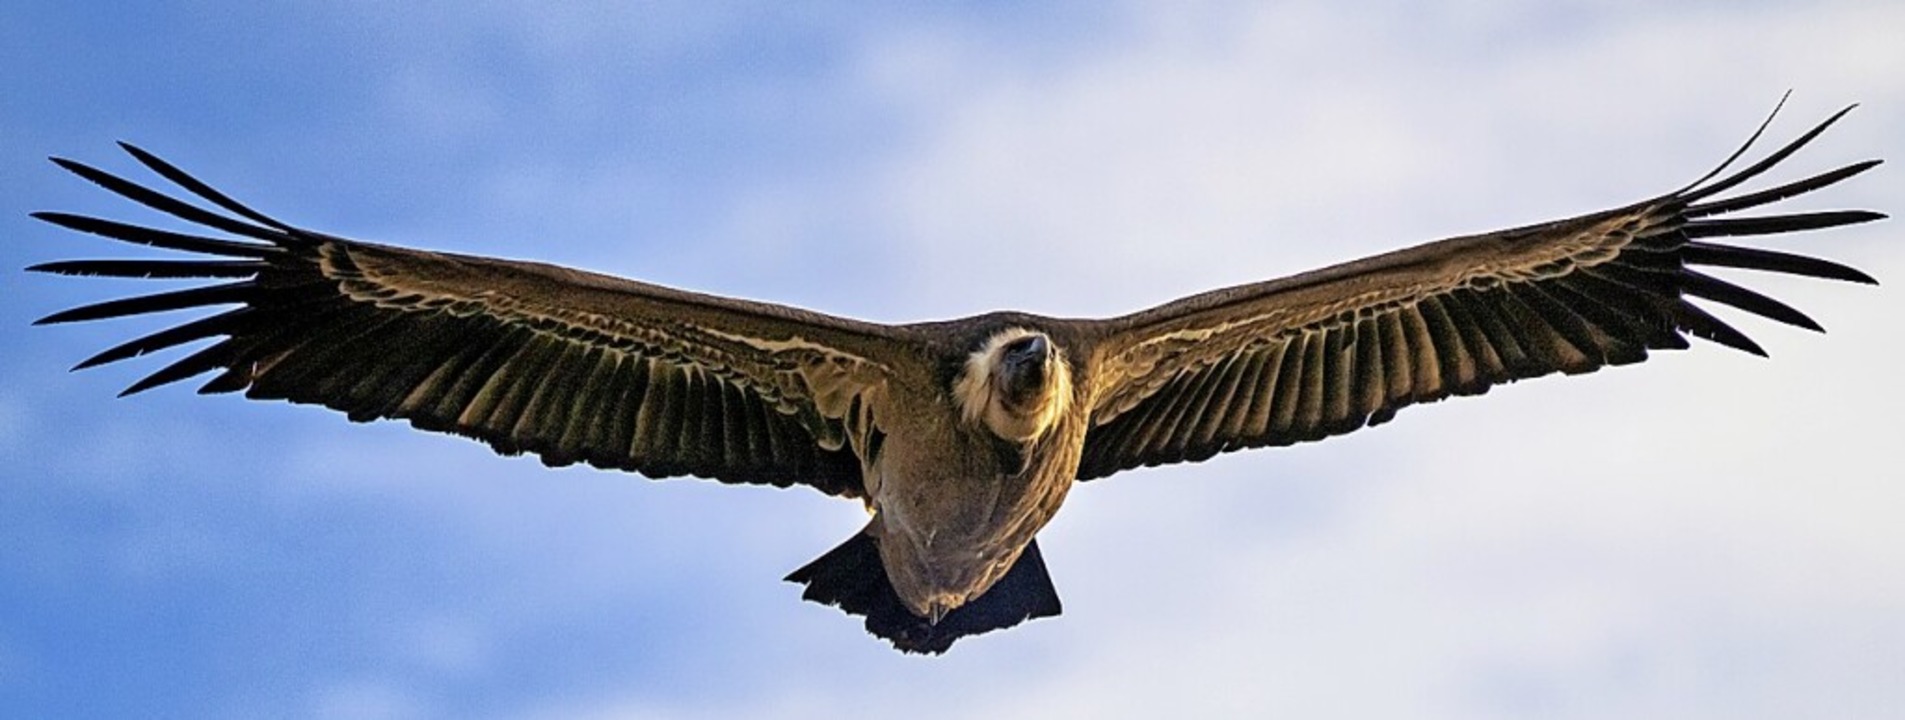 Ein Geier im Anflug: In spanischen Nationalparks kein seltenes  Bild.  | Foto: rudiernst - stock.adobe.com